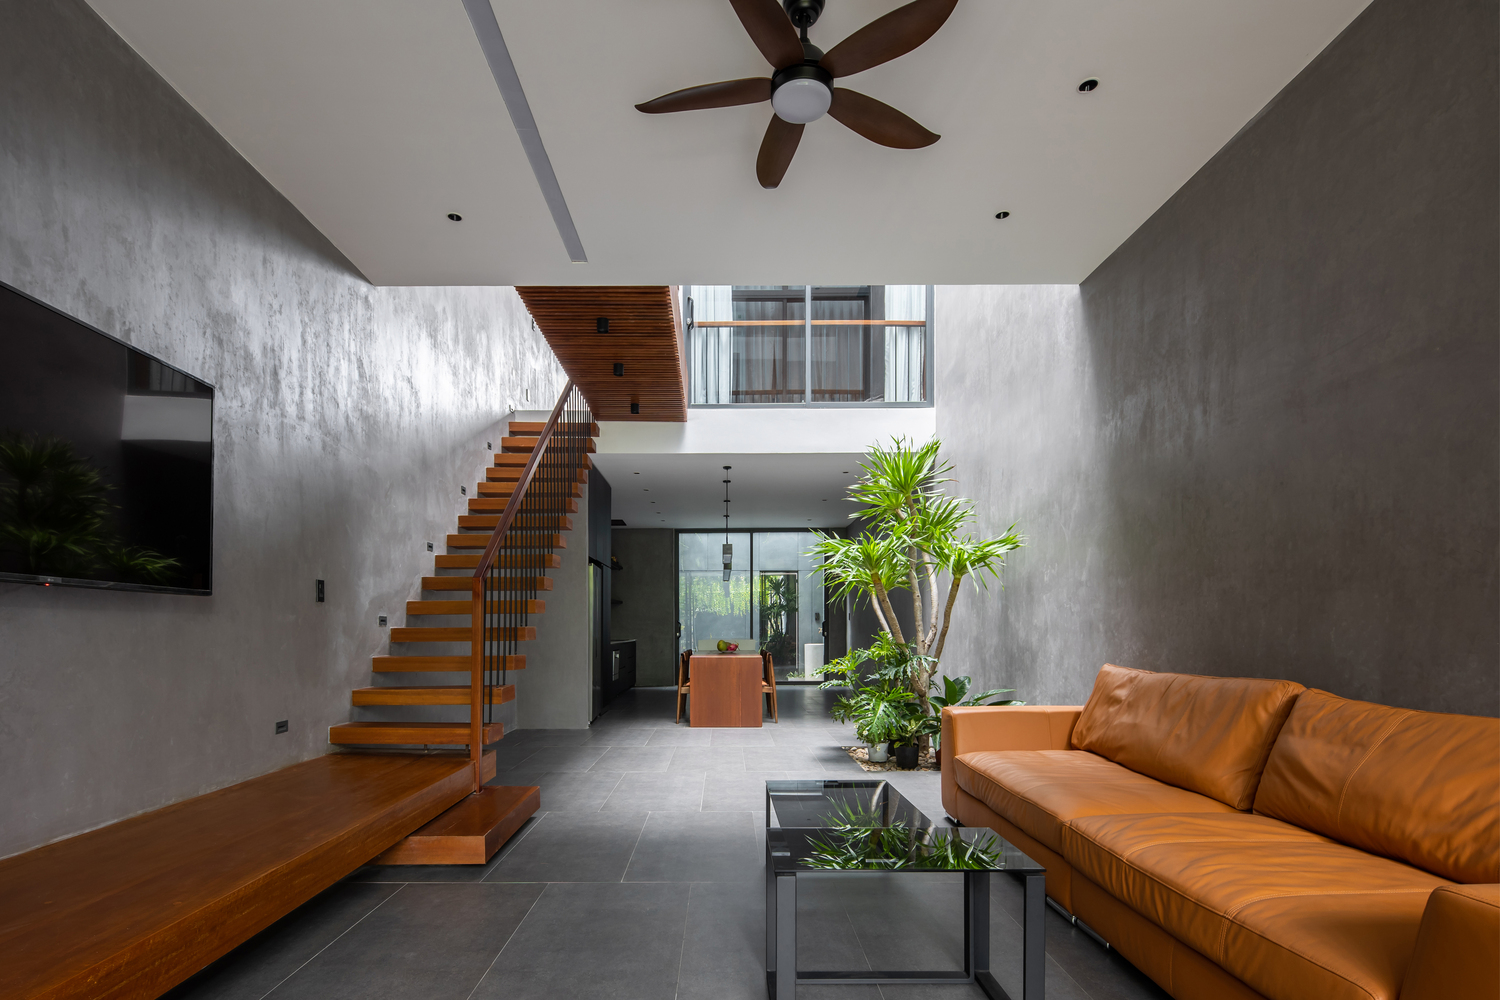 Phòng khách thiết kế tối giản với bộ ghế sofa màu nâu da bò êm ái, đối diện là tivi treo tường, tone màu xám kết hợp nâu gỗ cho cái nhìn ấm áp.